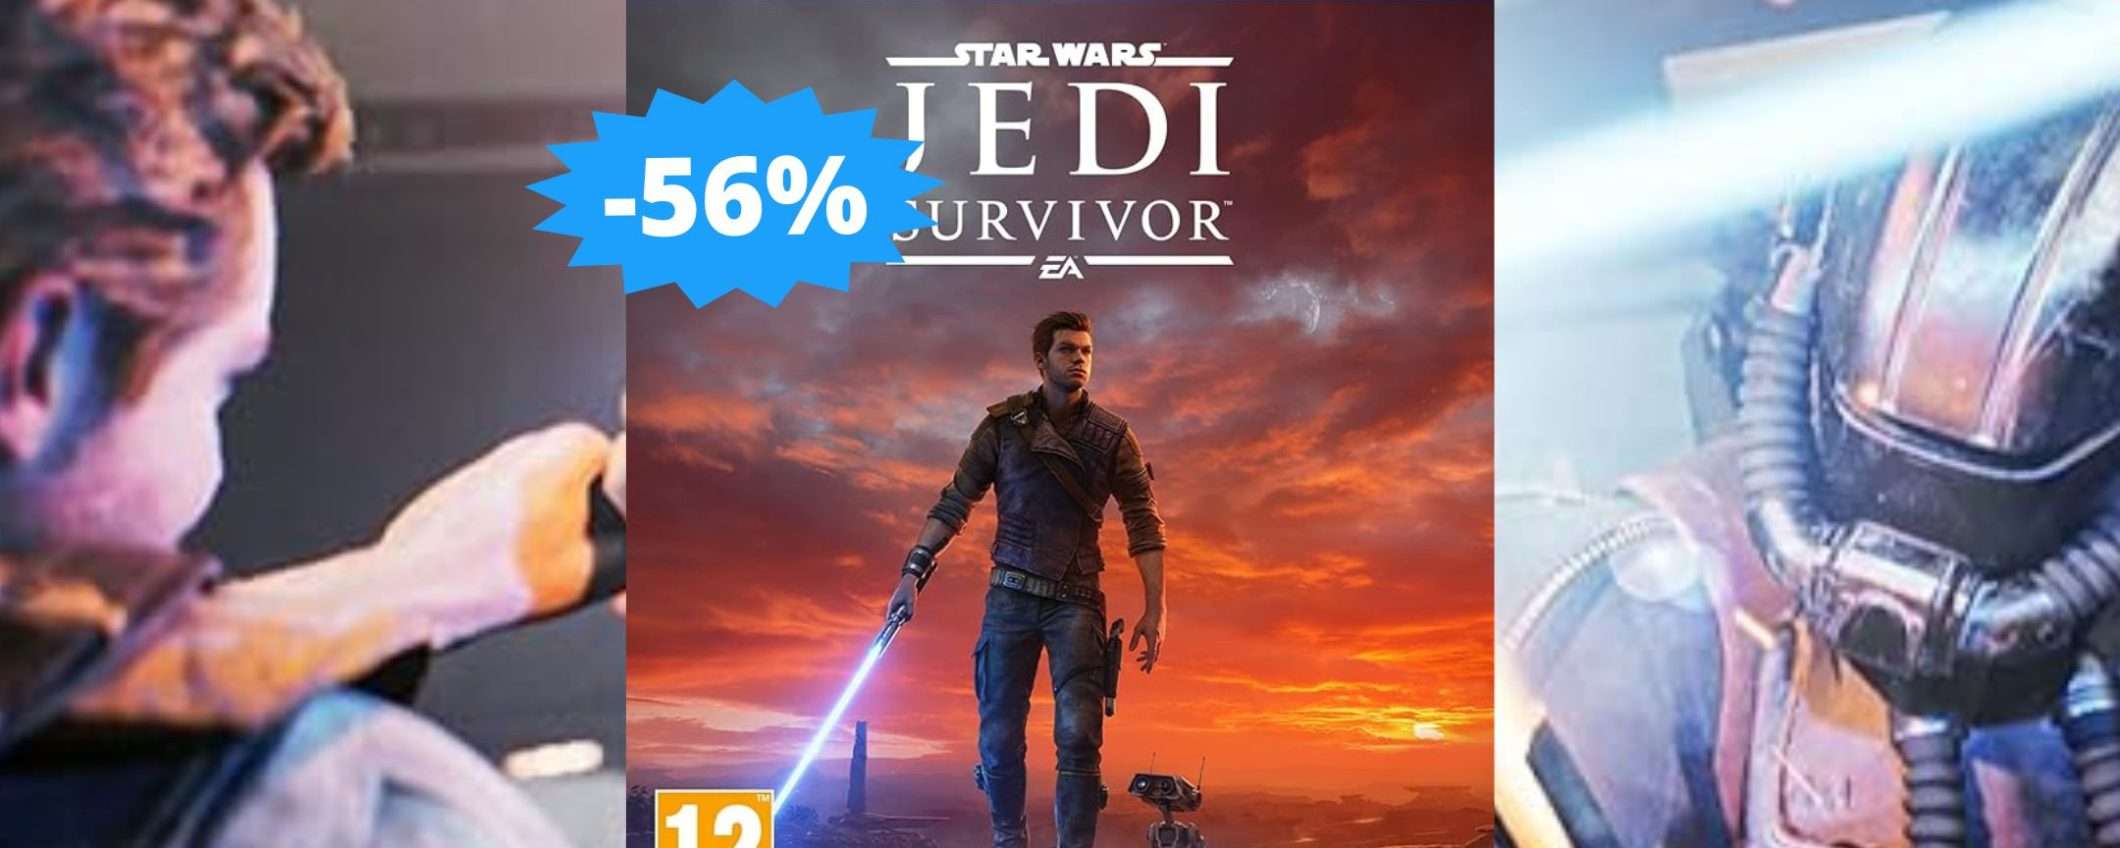 Star Wars Jedi Survivor per PS5: sconto GALATTICO del 56%